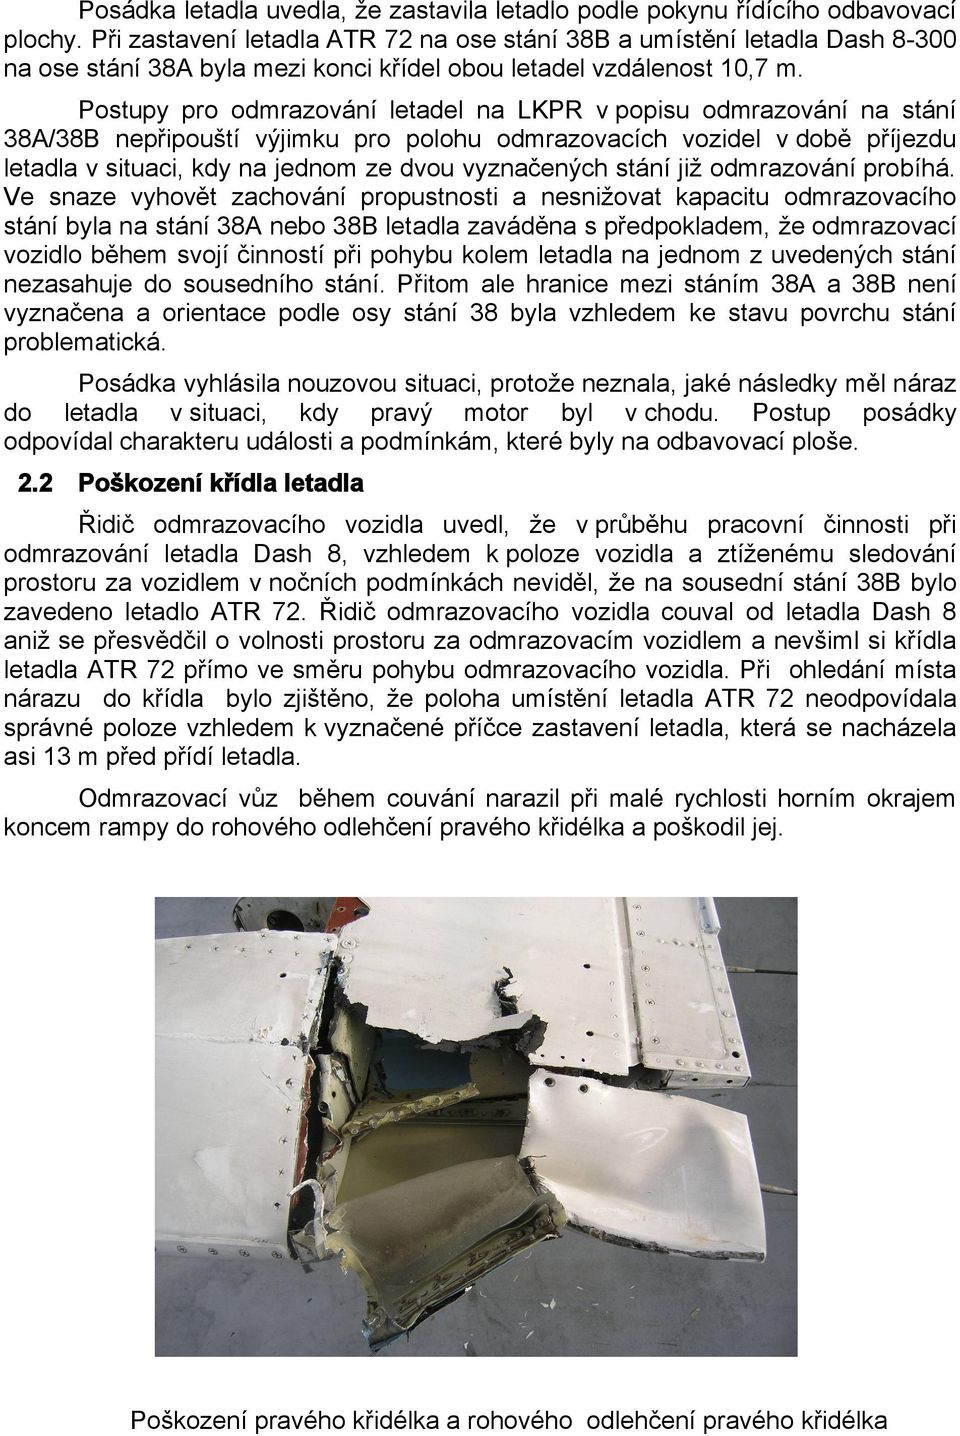 Postupy pro odmrazování letadel na LKPR v popisu odmrazování na stání 38A/38B nepřipouští výjimku pro polohu odmrazovacích vozidel v době příjezdu letadla v situaci, kdy na jednom ze dvou vyznačených